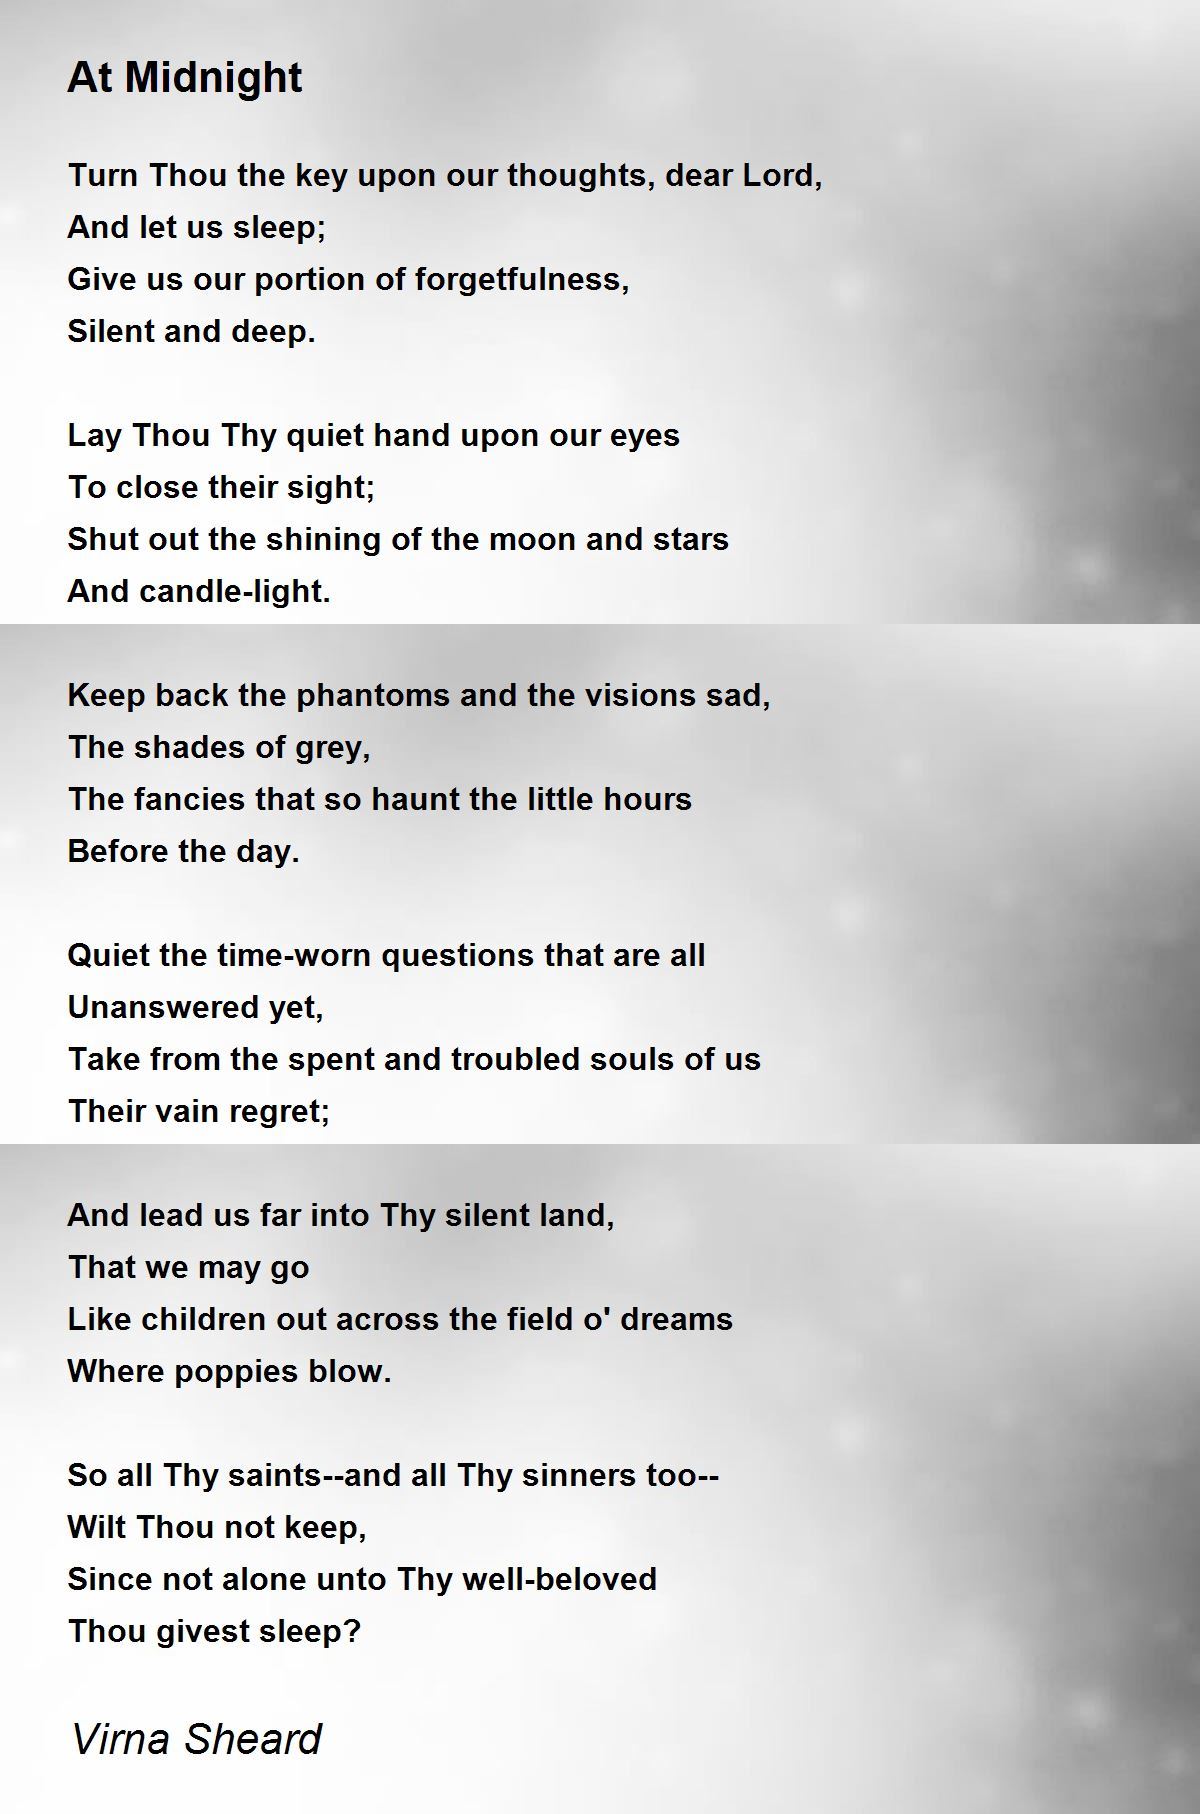 At Midnight - At Midnight Poem by Virna Sheard